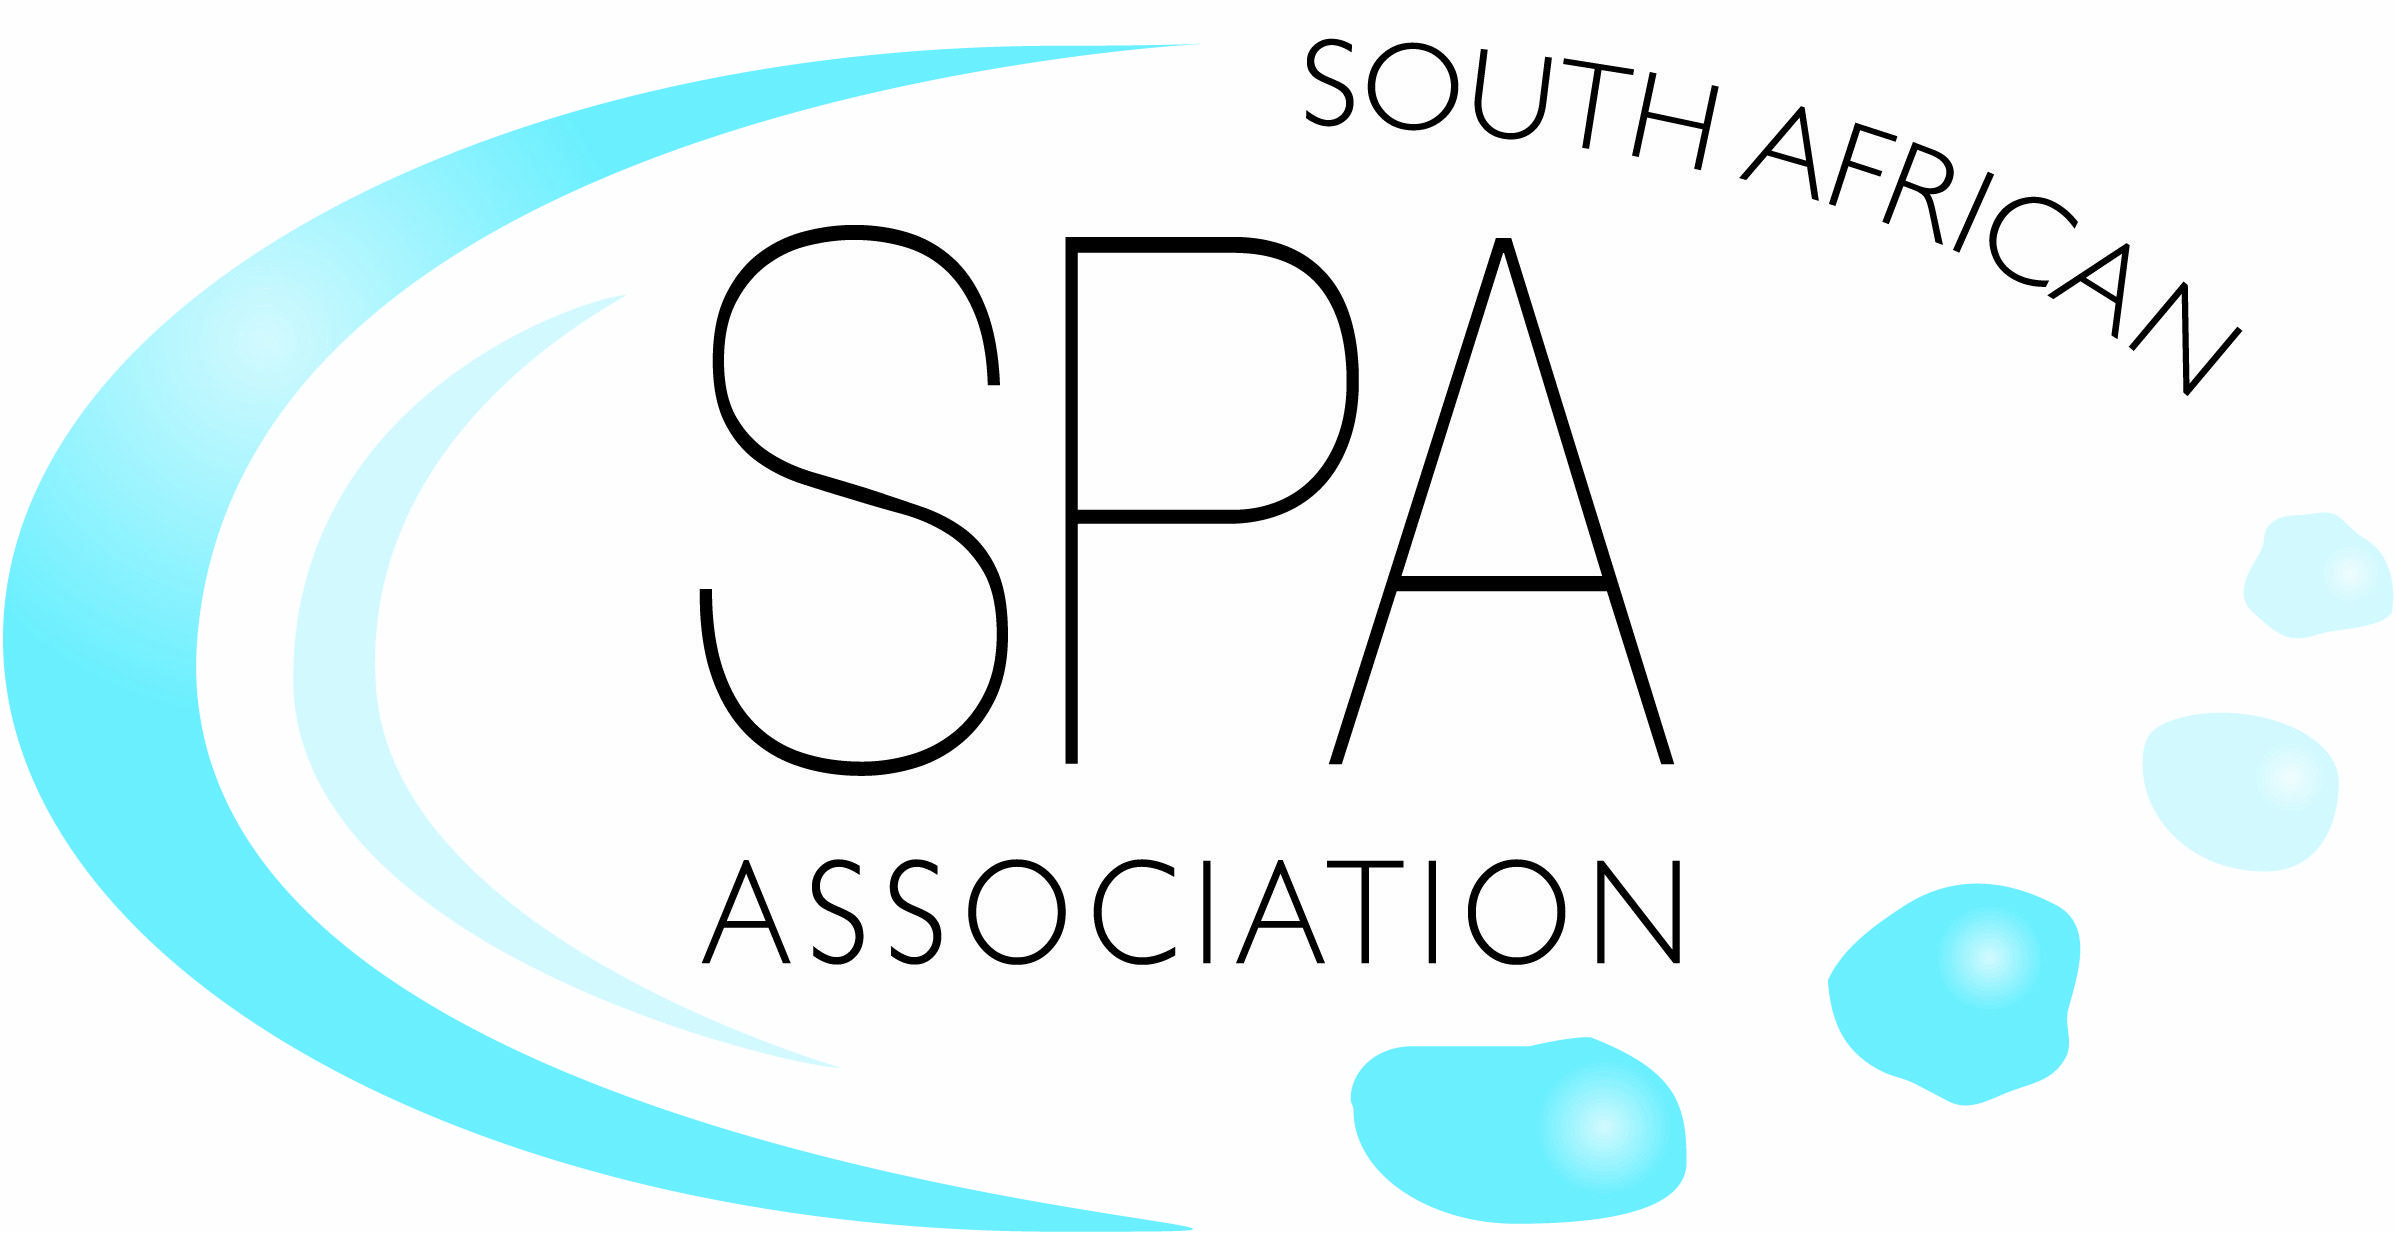 Sasa Logo - sasa logo copy - Ginkgo Spa and Wellness Group » Ginkgo Spa and ...